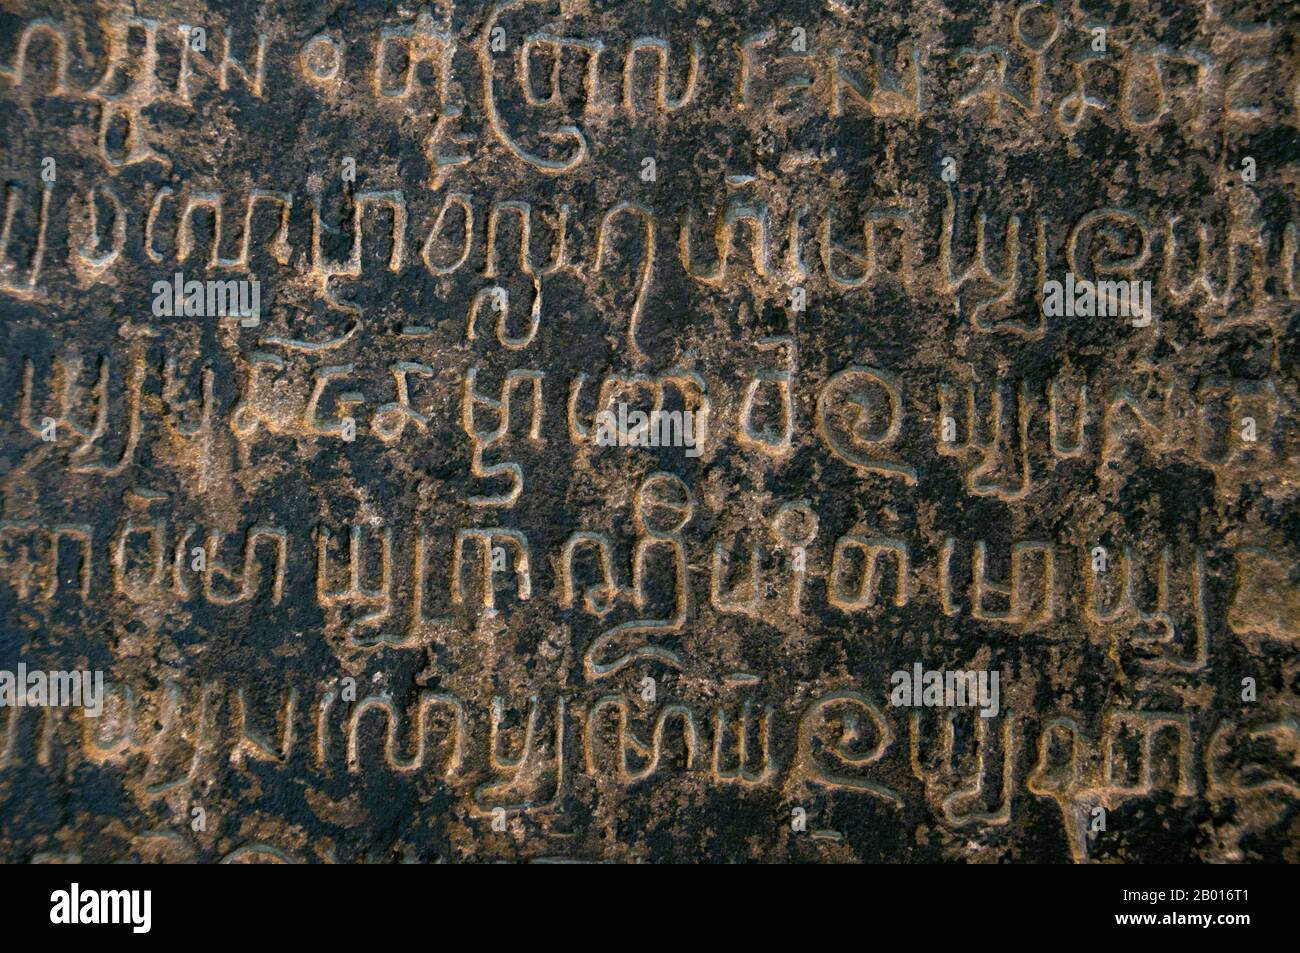 Thailand: Lanna Inschrift Steine, Inschrift Raum, Haripunchai National Museum, Lamphun. Die Tai Tham Schrift, auch bekannt als die Lanna Schrift, wird für drei lebende Sprachen verwendet: Nordthailändisch (das heißt kam Mueang), Tai Lü und Khün. Darüber hinaus wird die Lanna-Schrift auch für Lao Tham (oder altes Lao) und andere Dialektvarianten in buddhistischen Palmblättern und Notizbüchern verwendet. Die Schrift ist auch als Tham- oder Yuan-Schrift bekannt. Lamphun war die Hauptstadt des kleinen, aber kulturell reichen Königreiches Mon von Haripunchai von etwa 750 u.Z. bis zur Zeit seiner Eroberung durch König Mangrai im Jahr 1281. Stockfoto